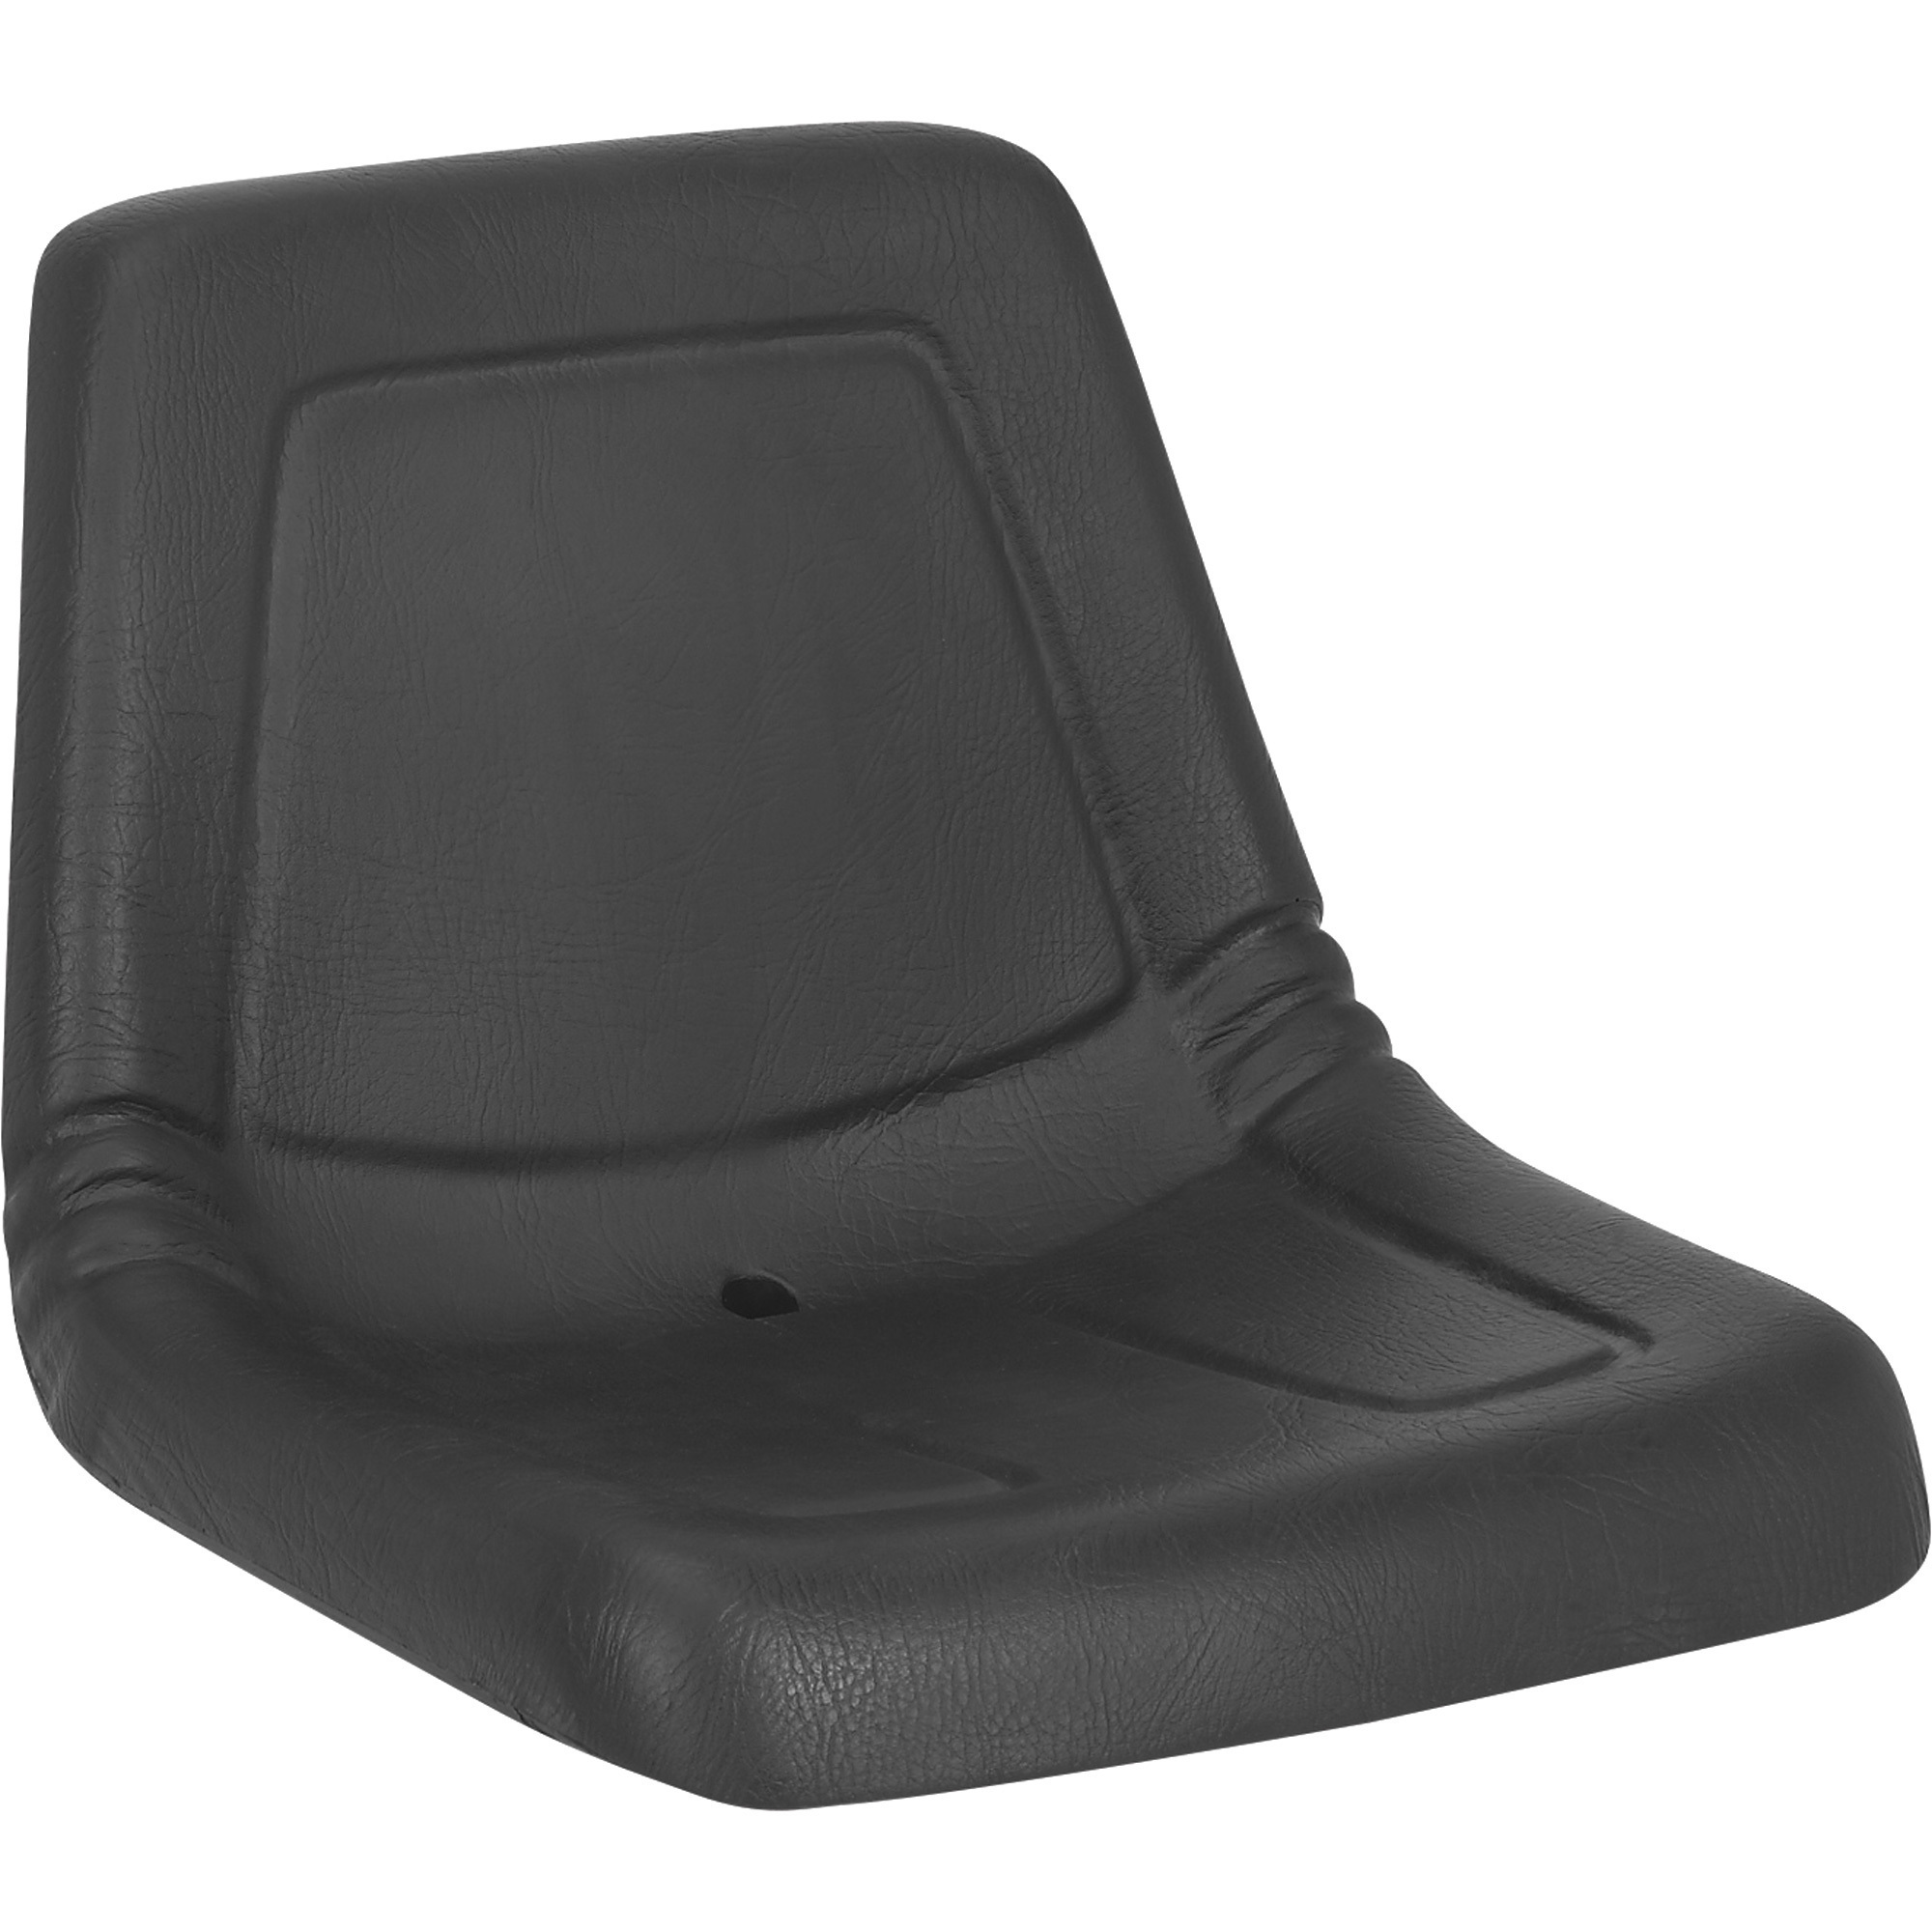 Black Talon High-Back Lawn Mower Seat â Black, Model 115000BK